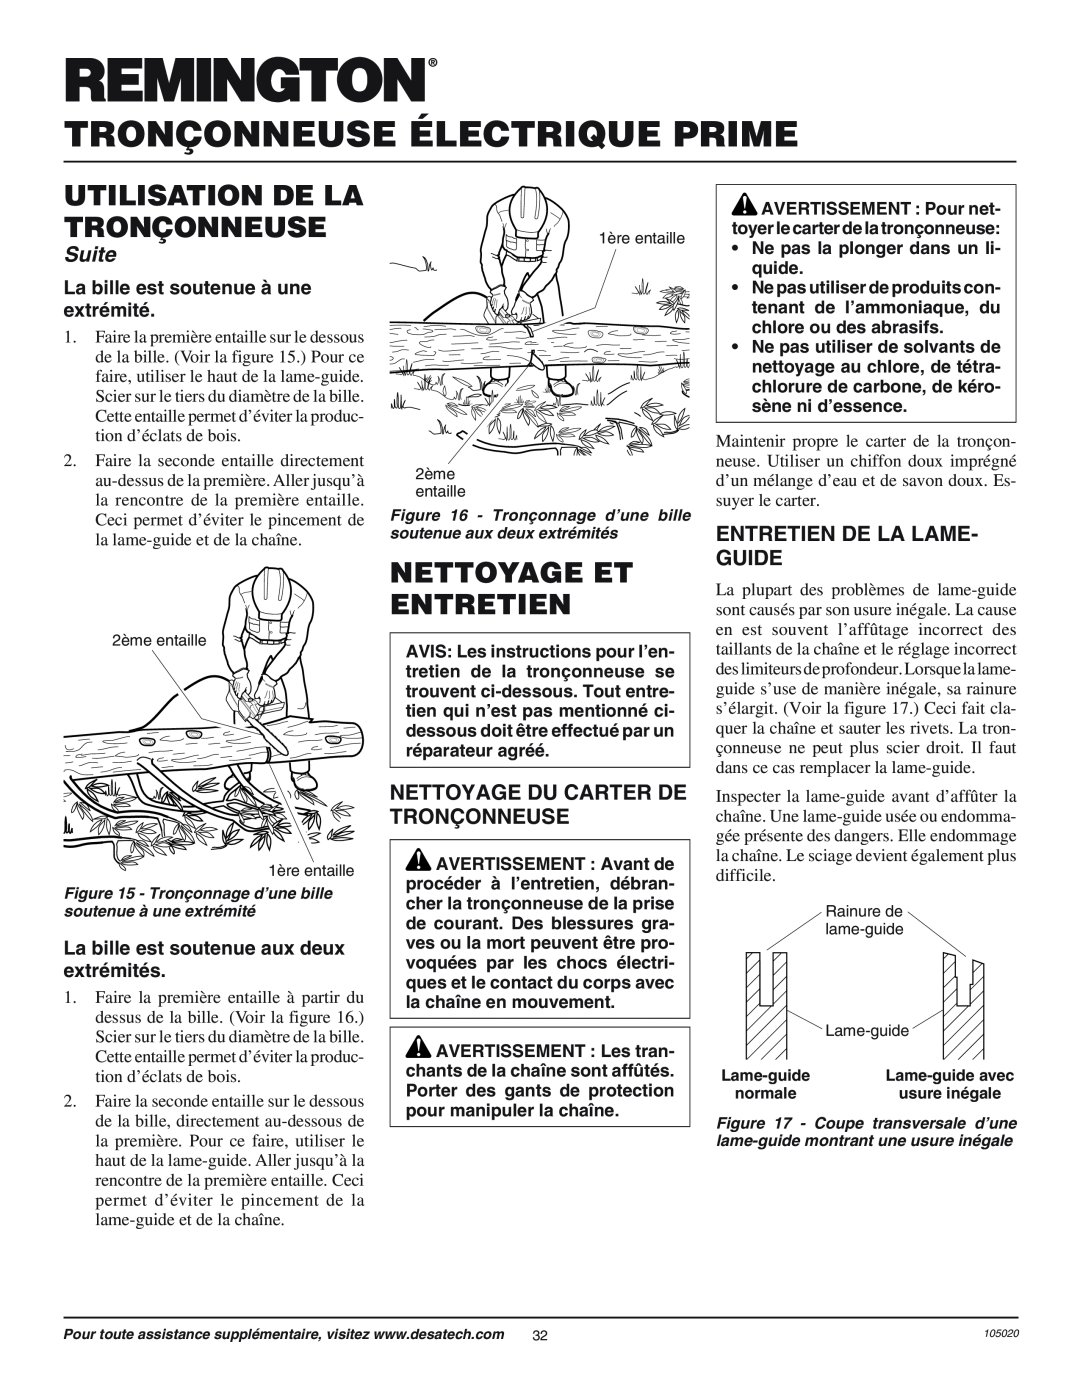 Desa EL-7 14-inch Nettoyage Et Entretien, Entretien De La Lame- Guide, Nettoyage Du Carter De Tron‚Onneuse, Suite 